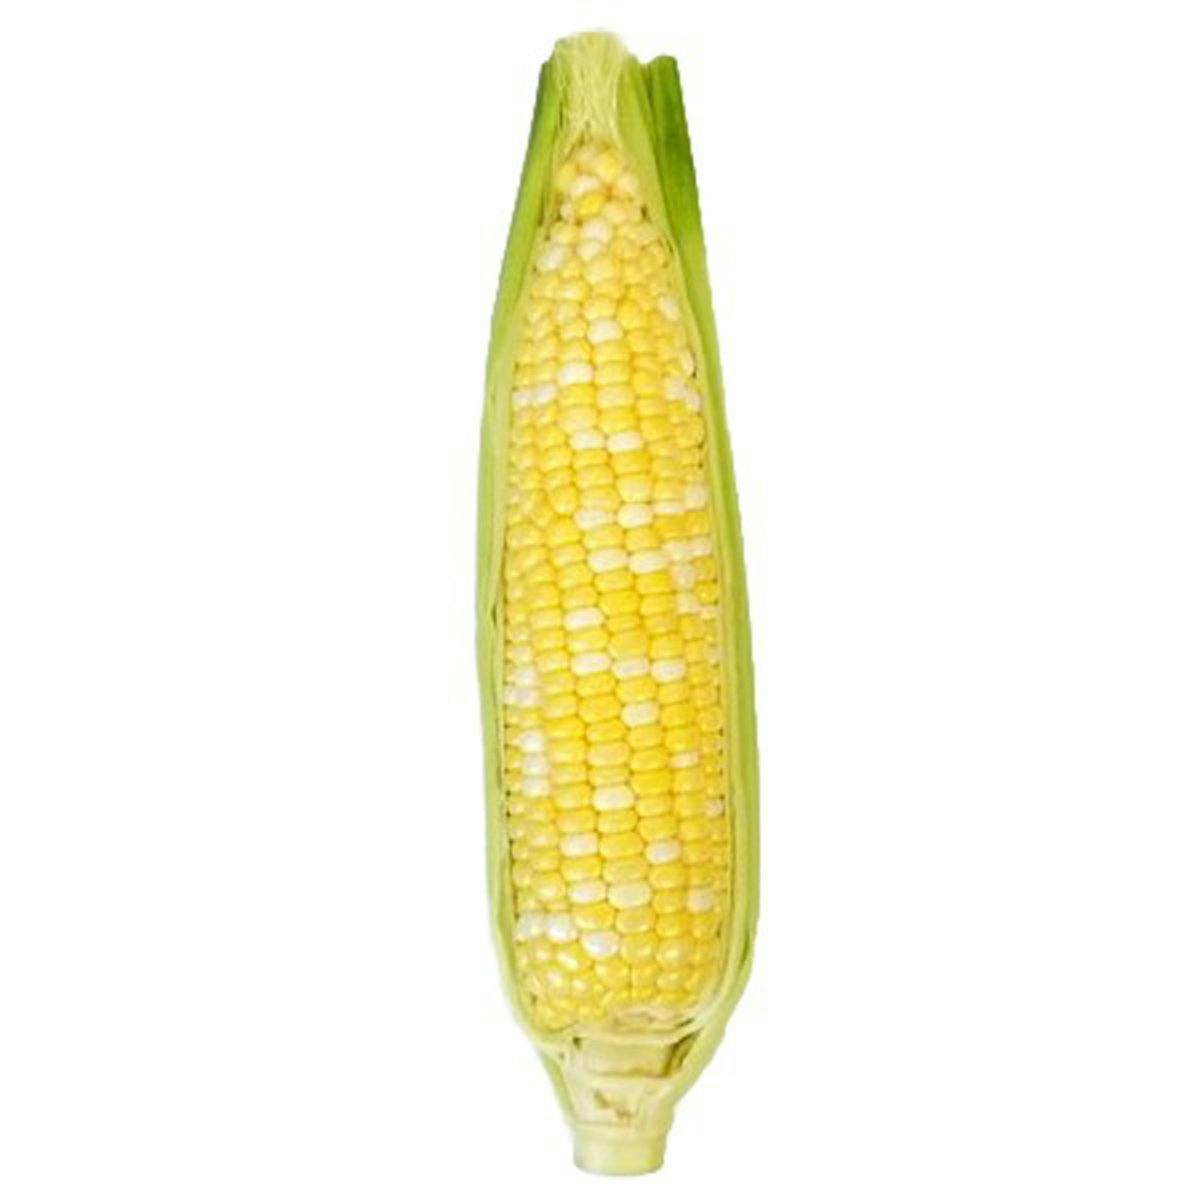 corn cobs, cut into thirds